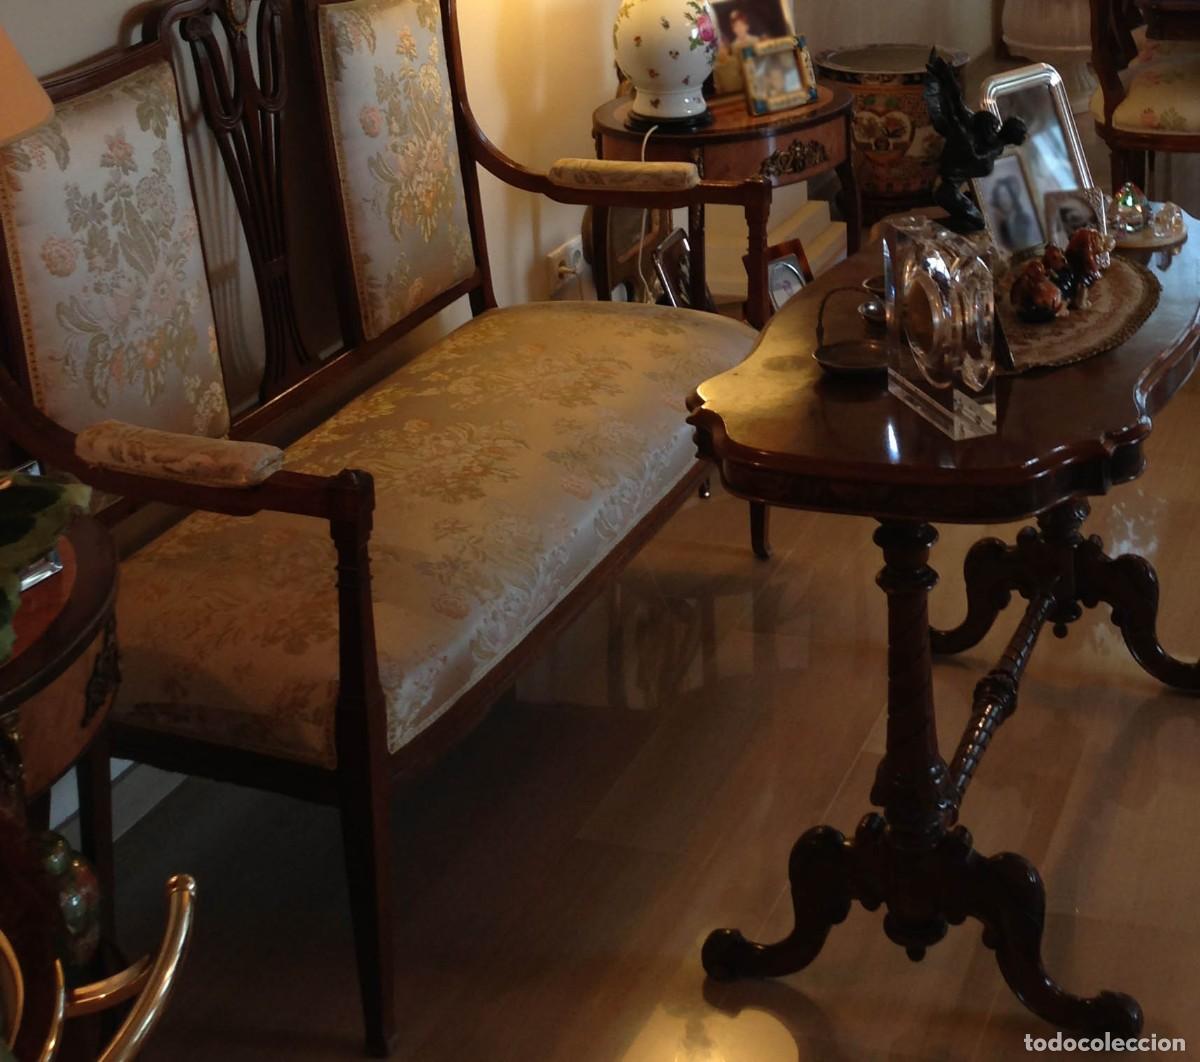 tresillo, sofá clásico vintage - Buy Antique armchairs on todocoleccion